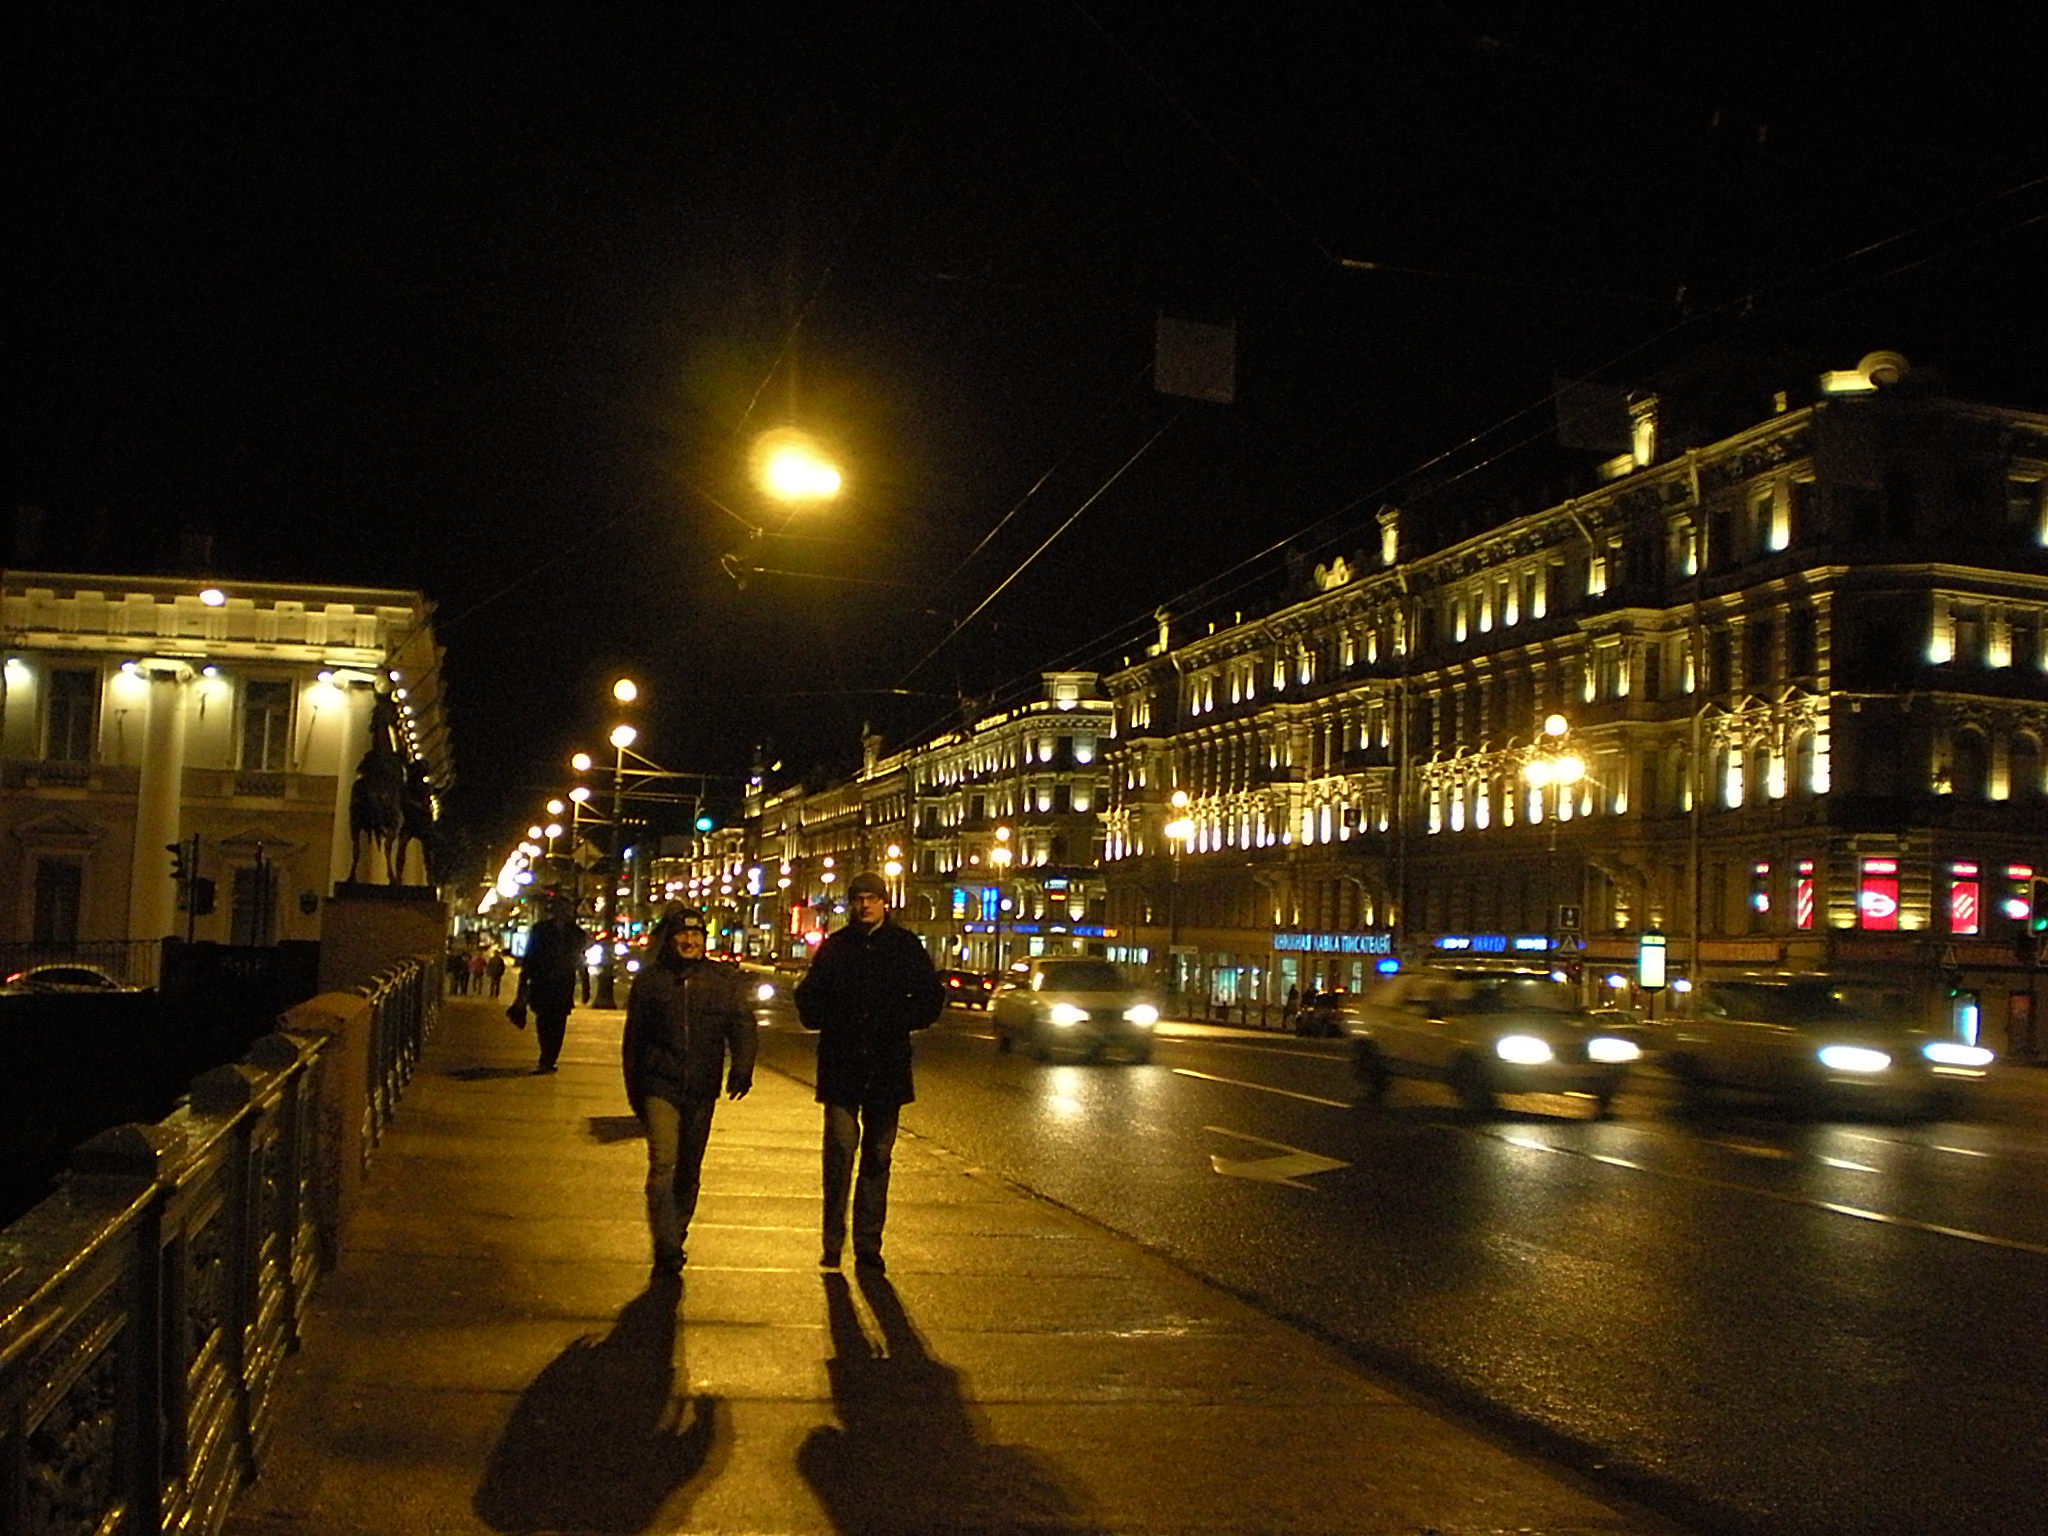 Night Buses in St. Petersburg - Liden & Denz